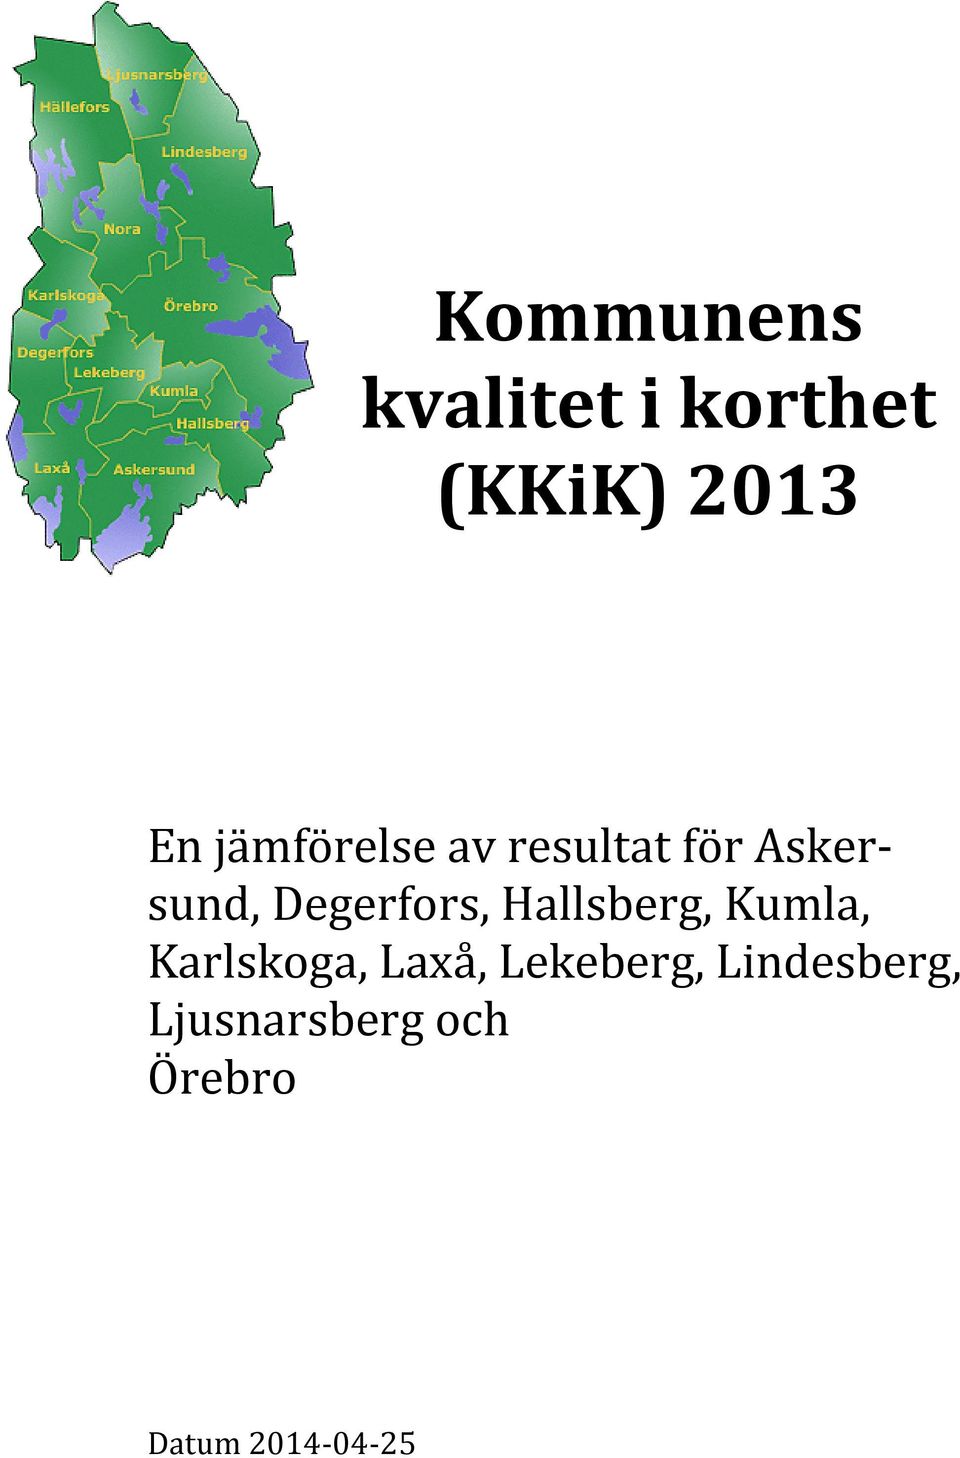 Degerfors, Hallsberg, Kumla, Karlskoga, Laxå,